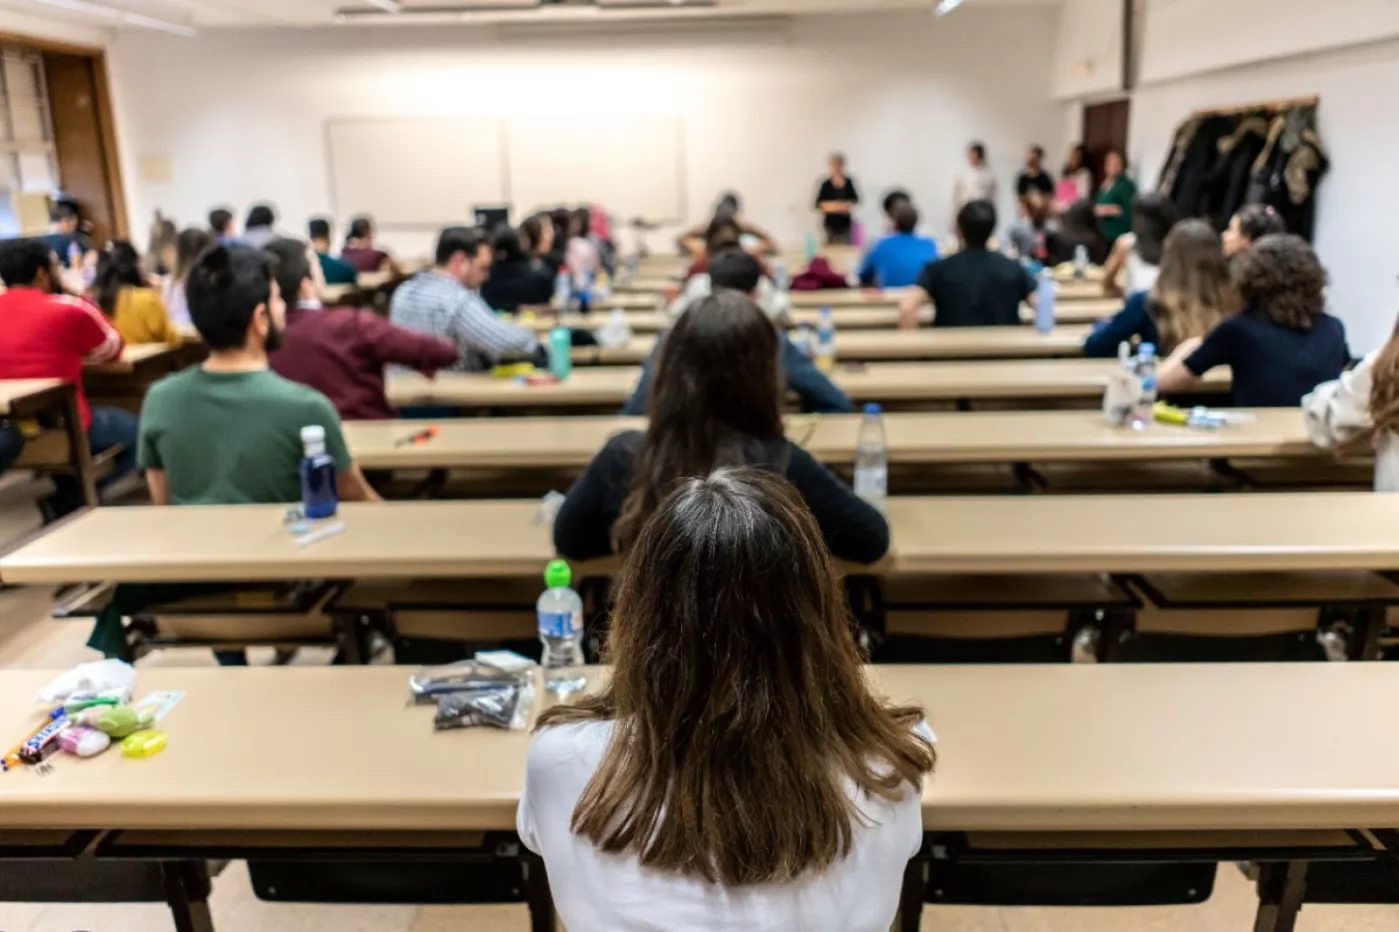 Un grupo de graduados en Medicina espera en el aula el inicio del examen MIR de la convocatoria 2020-2021. Foto: OLMO CALVO